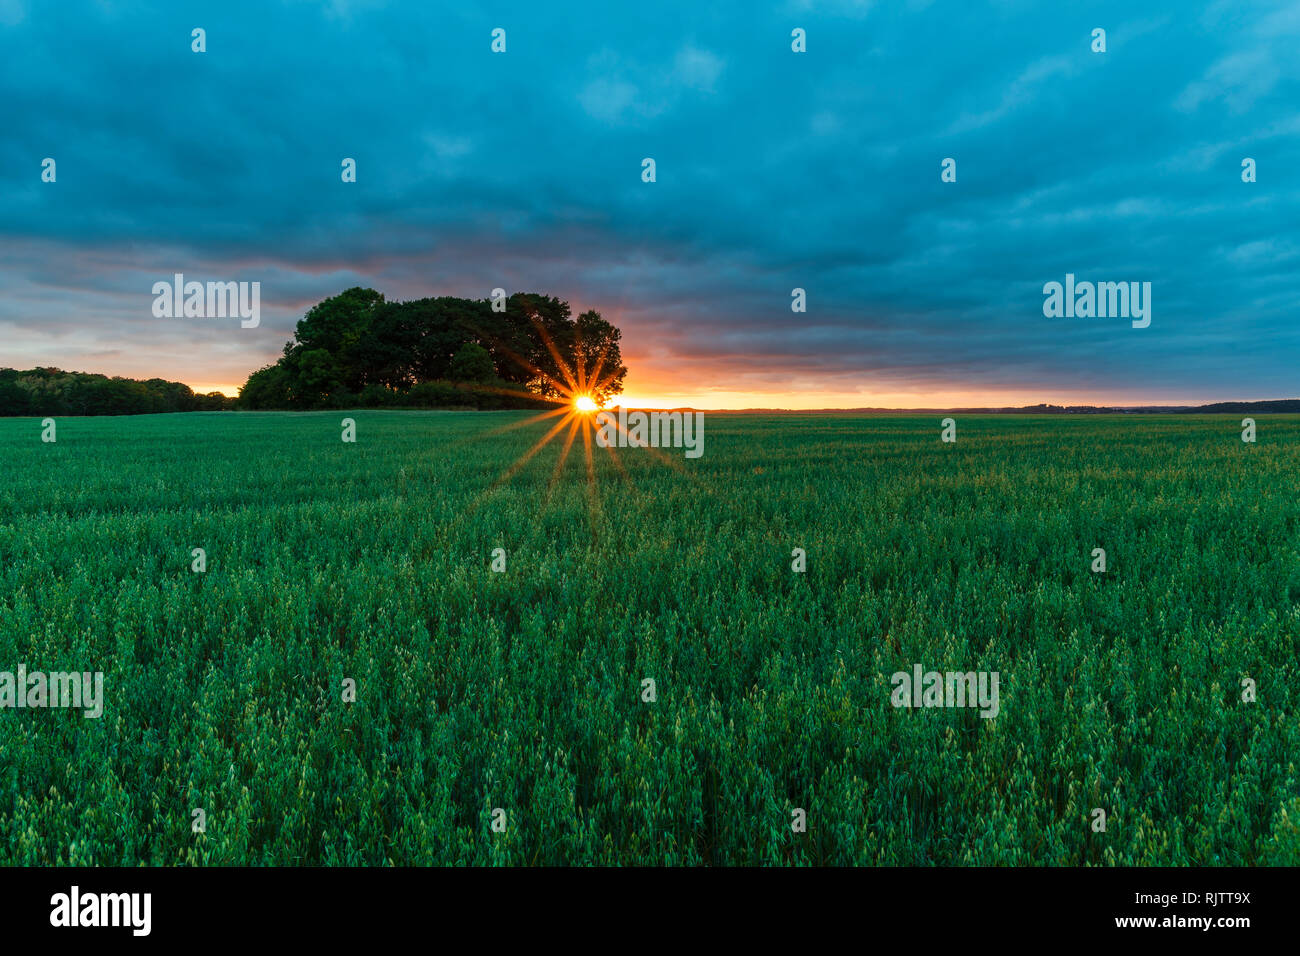 Ciel dramatique et coucher de soleil sur les terres arables, l'image horizontale, Halland, Suède, Europe Banque D'Images